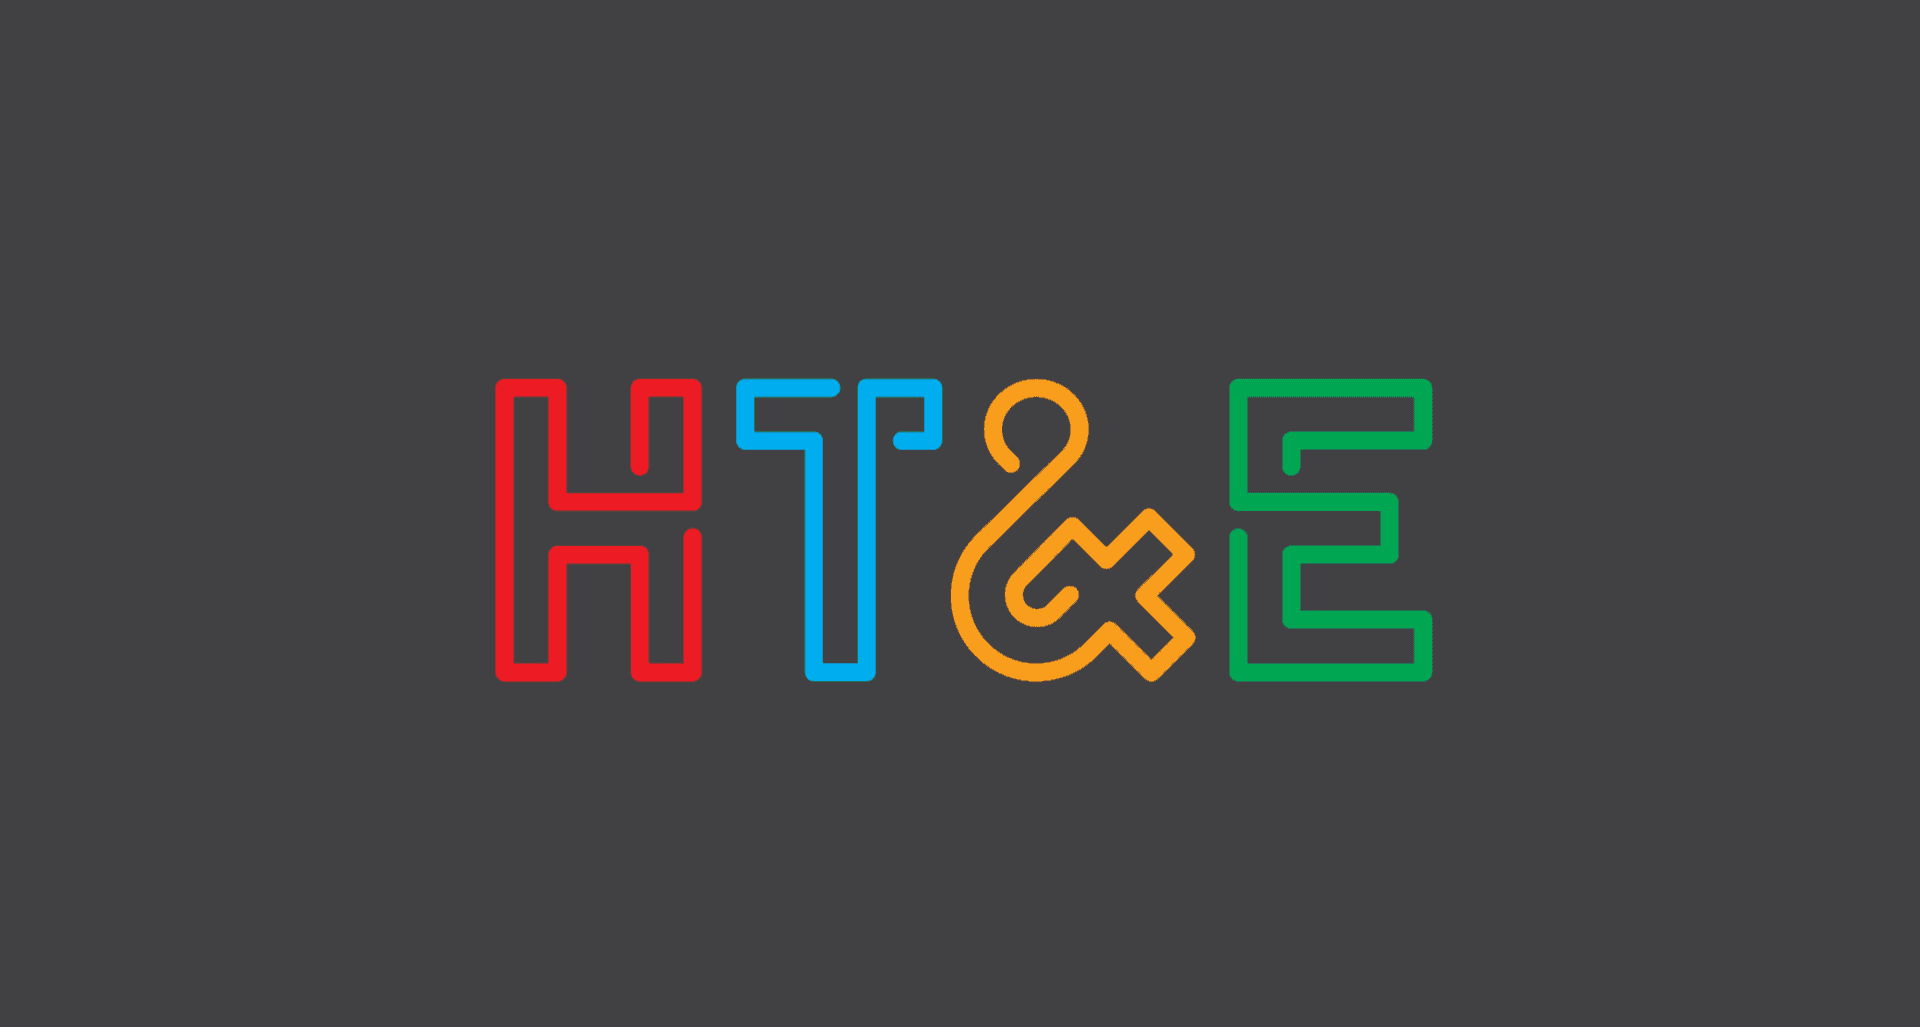 HT&E